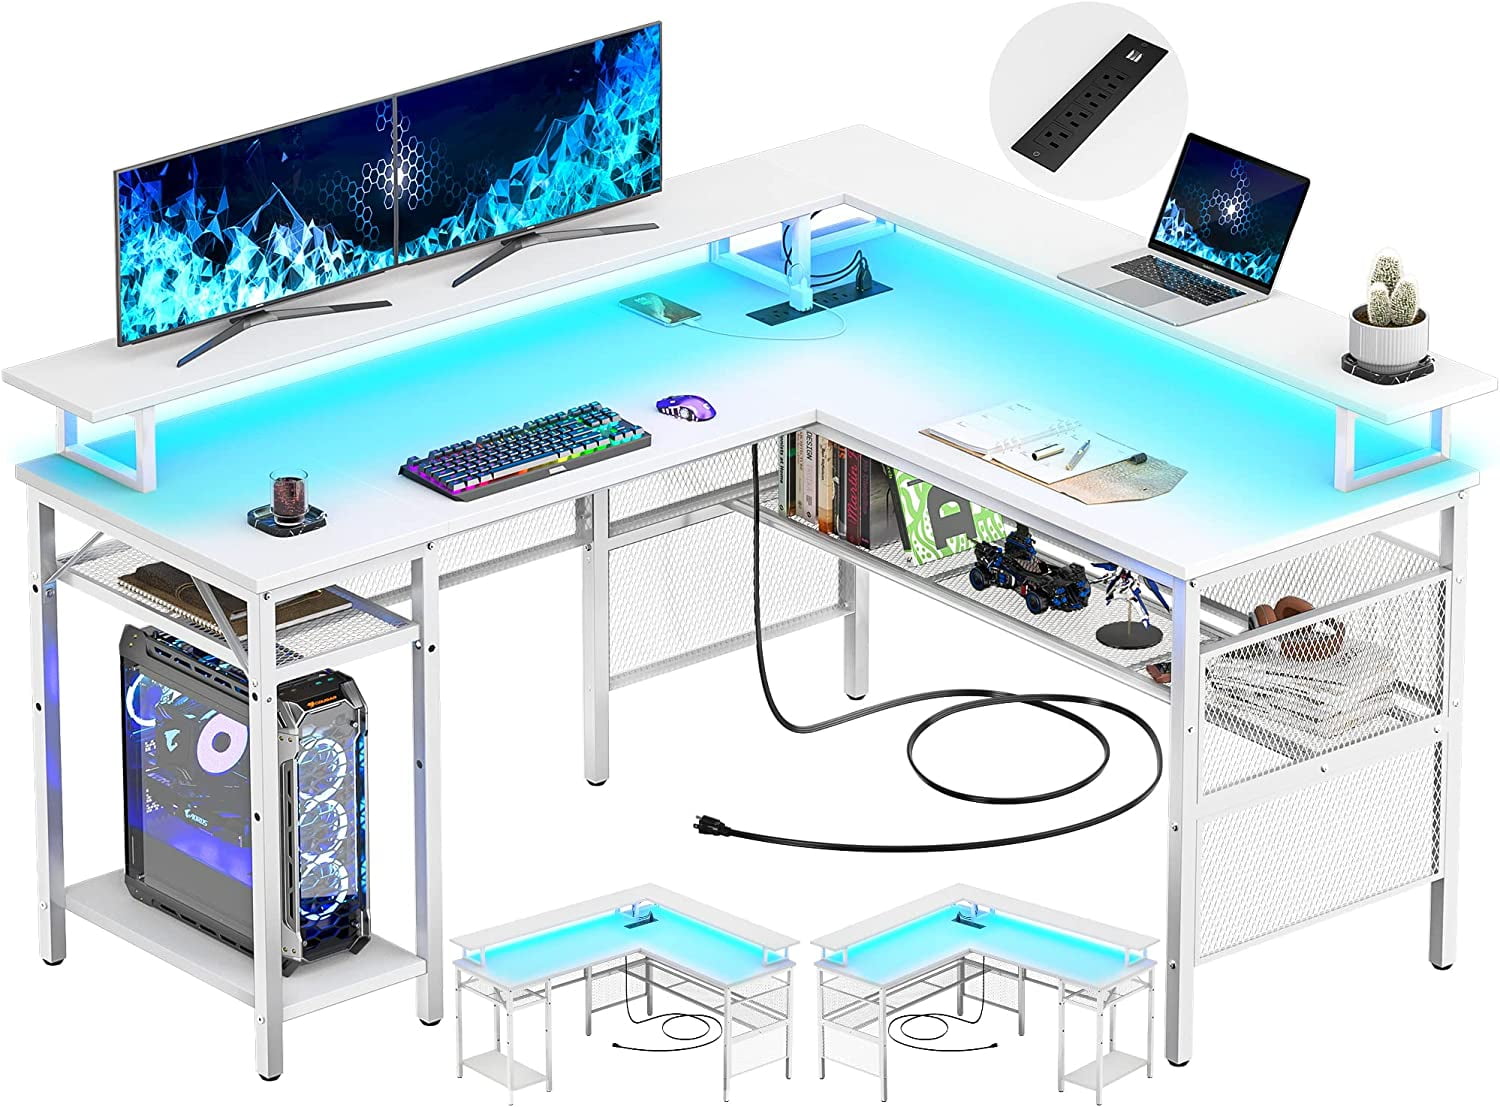 L Shaped Gaming Desk with LED Lights : CKP5454GLD